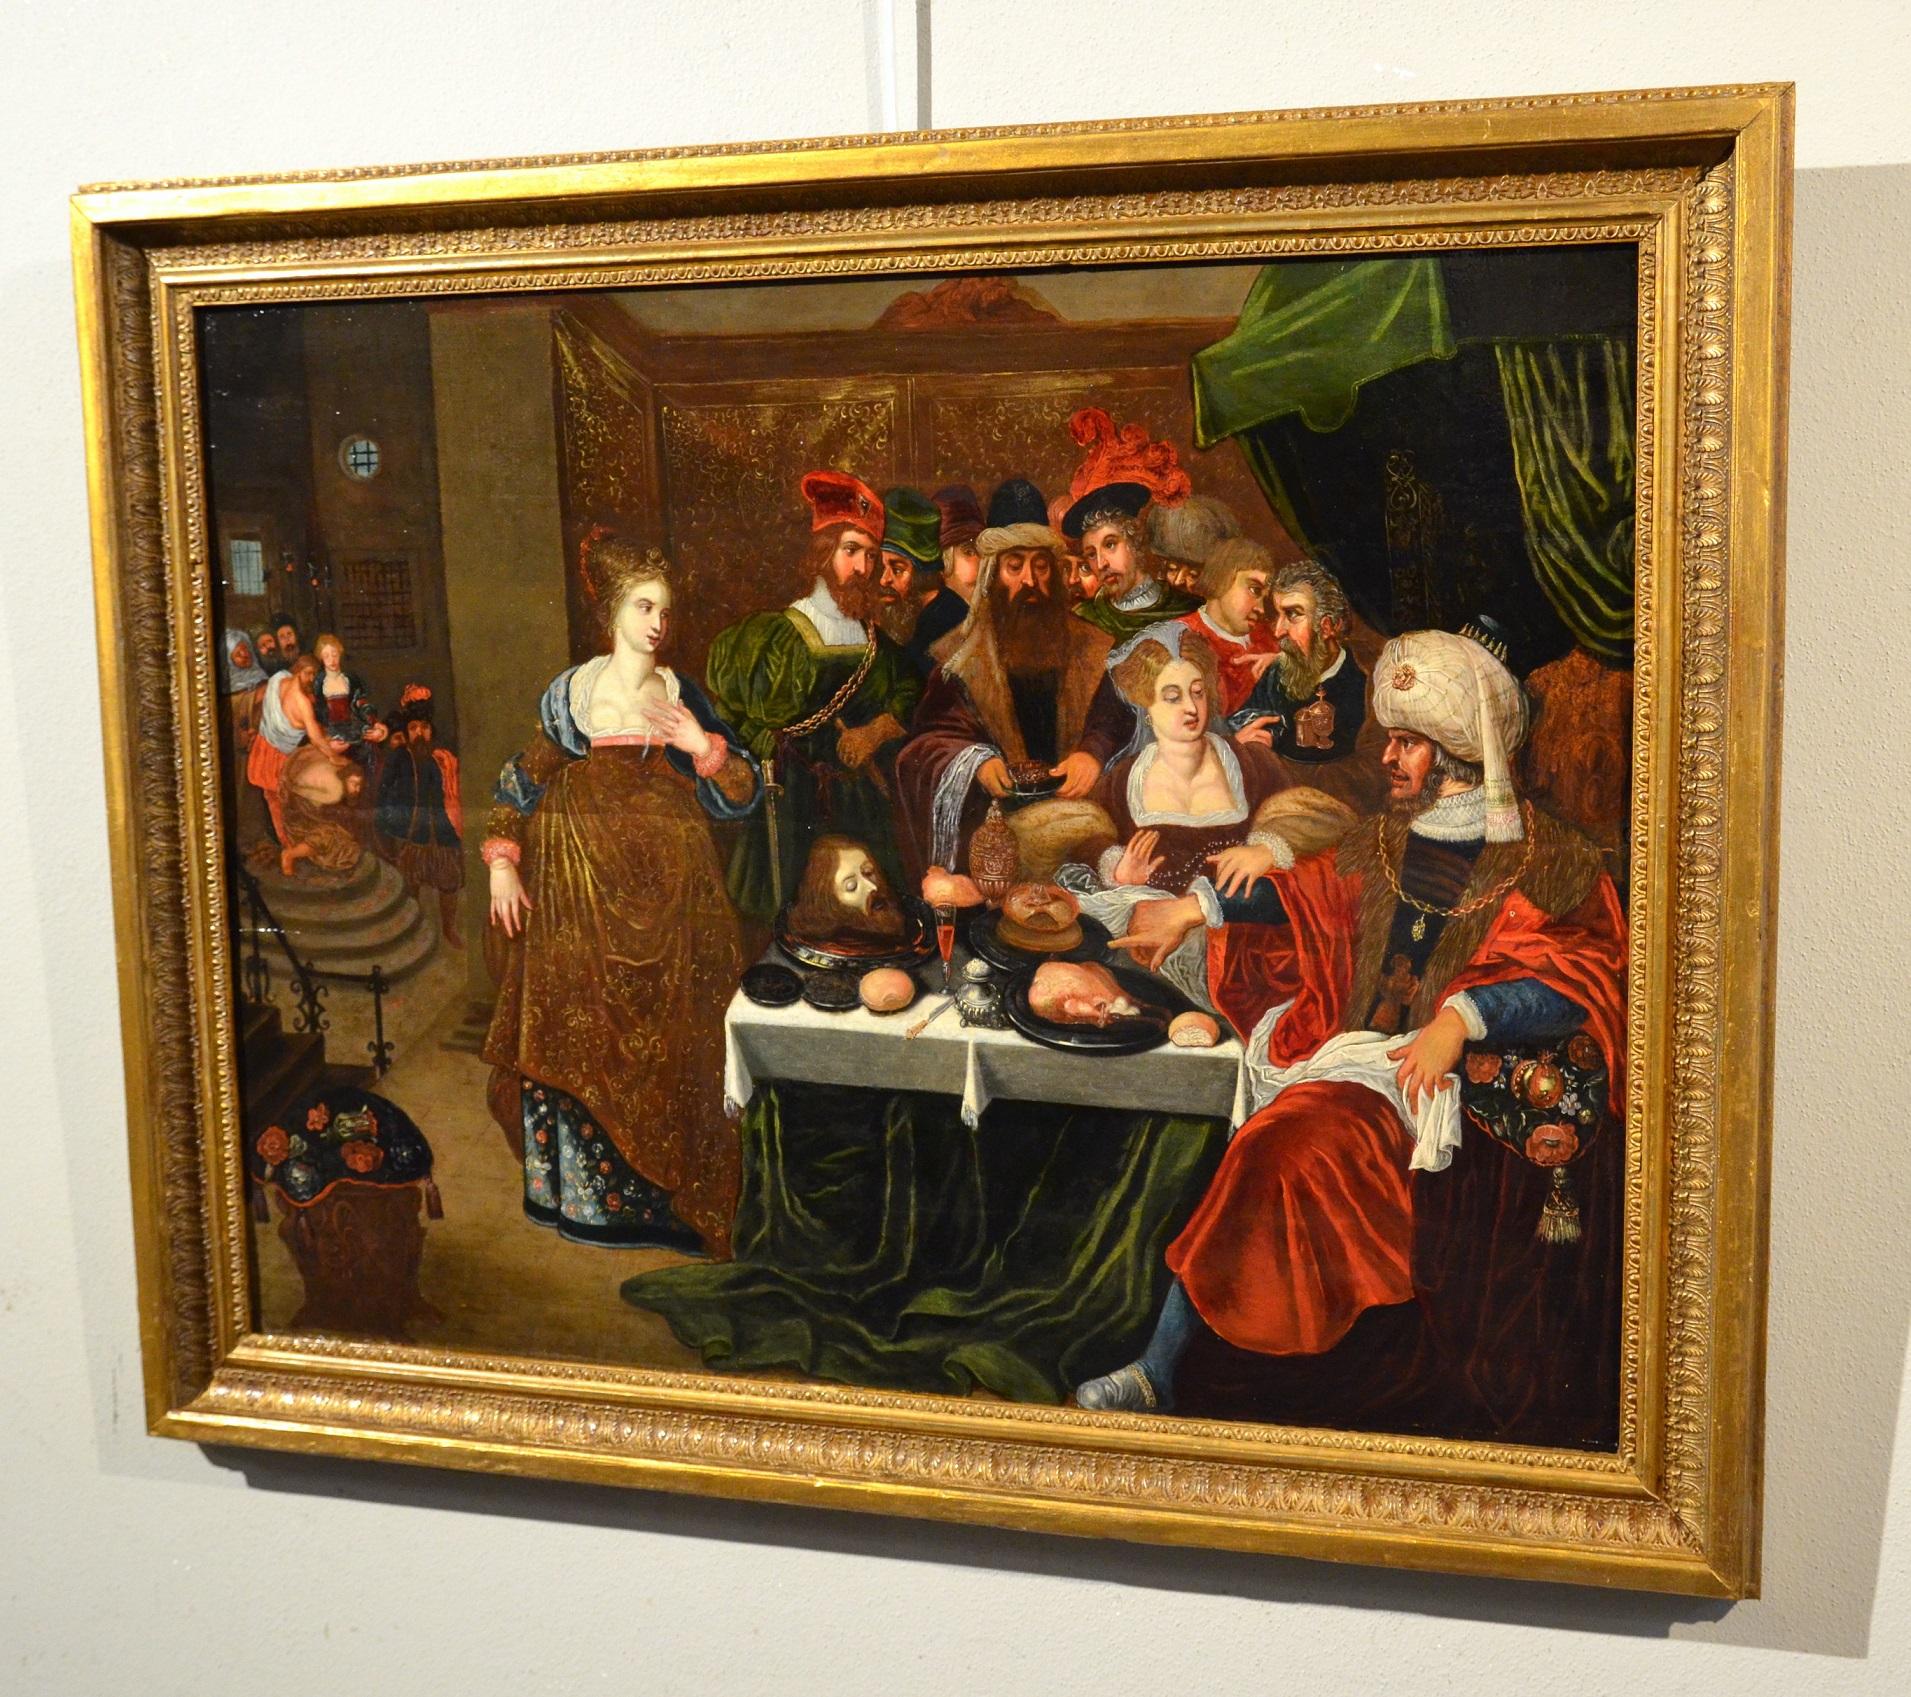 Gaspar van den Hoecke (Antwerpen, 1585 - 1648)
Das Bankett des Herodes

Anfang des 17. Jahrhunderts
Öl auf Tafel, mit Goldakzenten (in der Gestalt von Salome und in den Vorhängen des Gebäudes im Hintergrund)
56 x 80 cm.
gerahmt 72 x 90